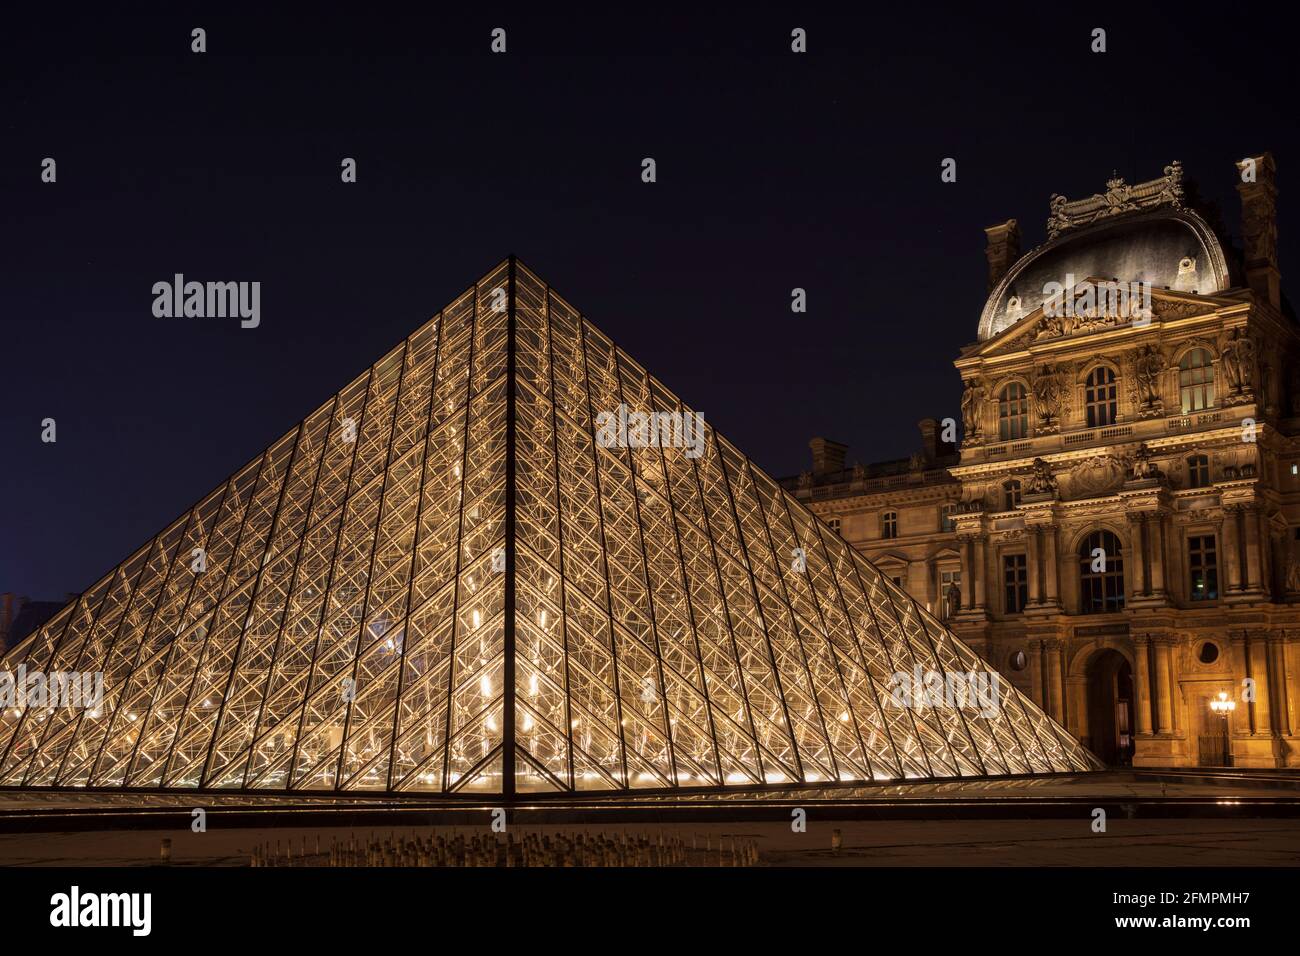 La Piramide del Louvre / Piramide del Louvre & Pavillon Richelieu, Musée du Louvre, Parigi, Francia. Foto Stock